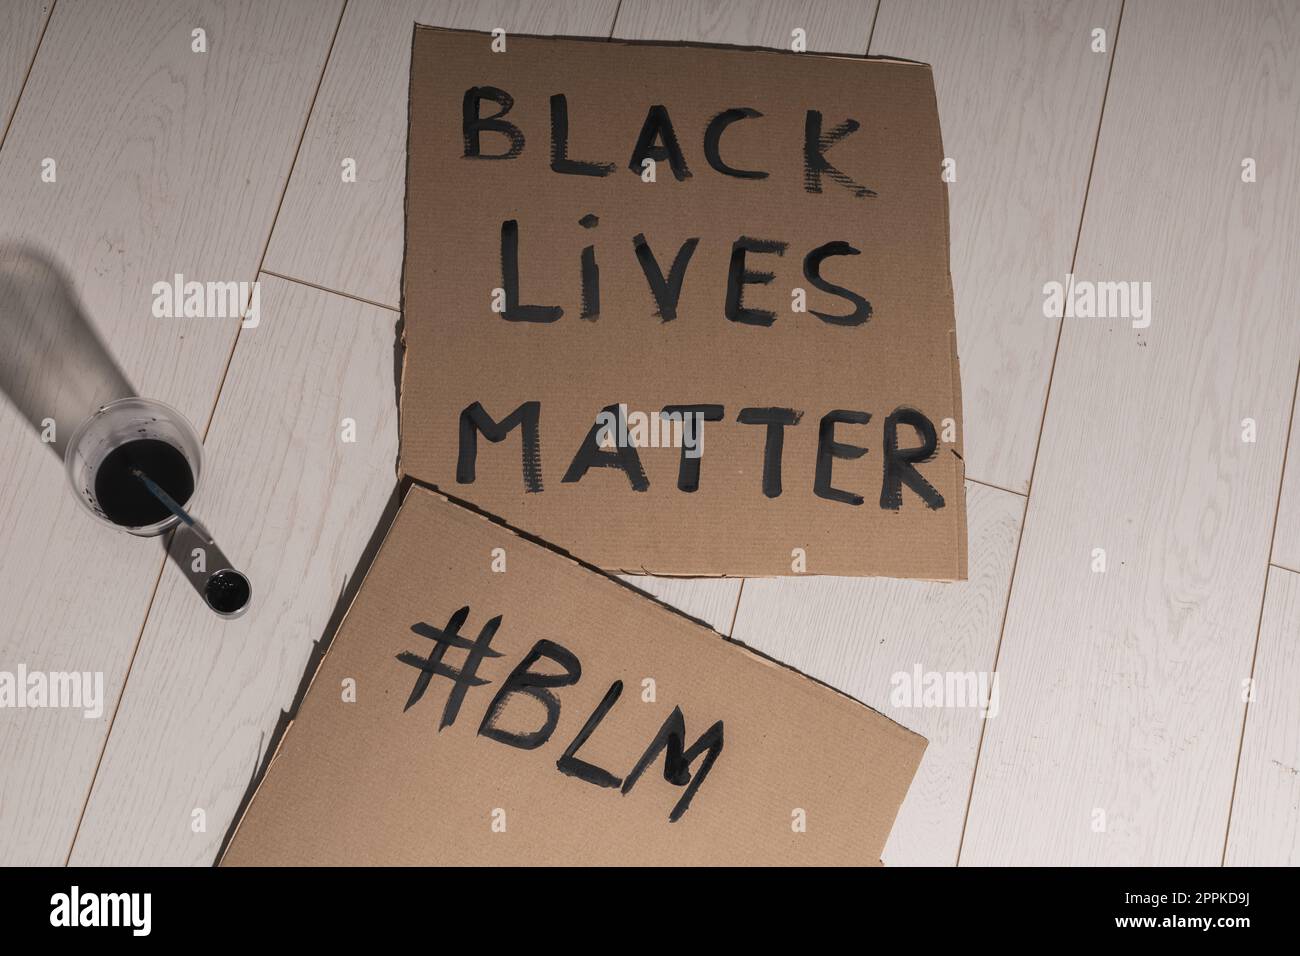 Schwarze Leben sind wichtig und kämpfen gegen Rassismus und schreiben Zeichen und Worte auf Pappe - Protestkonzept und blm-Aktivismus Stockfoto